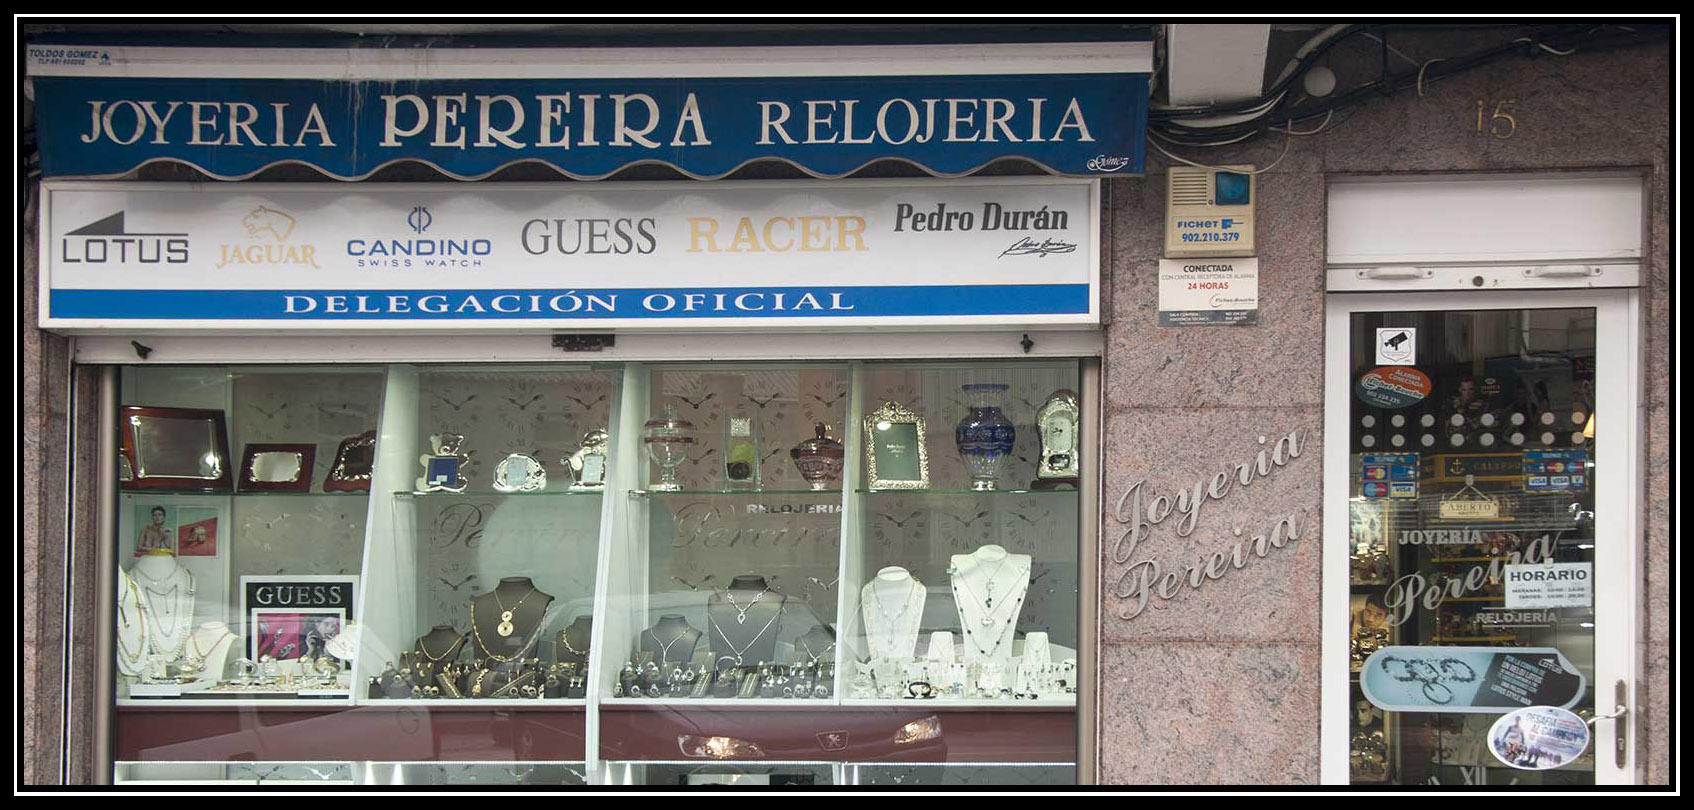 Images Joyeria Pereira Relojeria